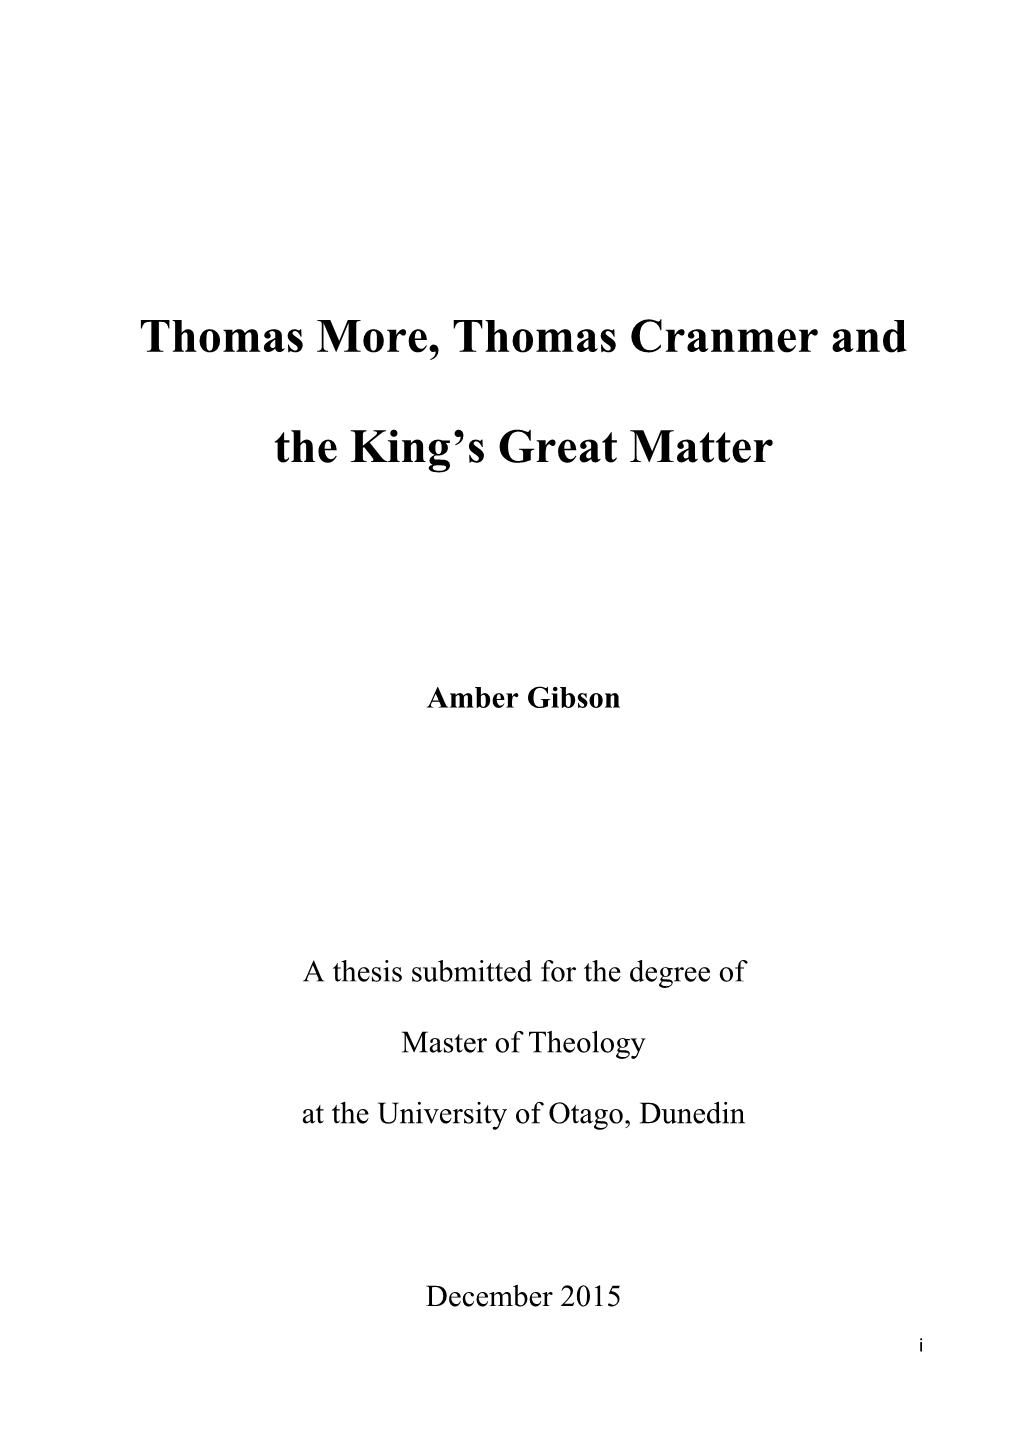 Thomas Cranmer And